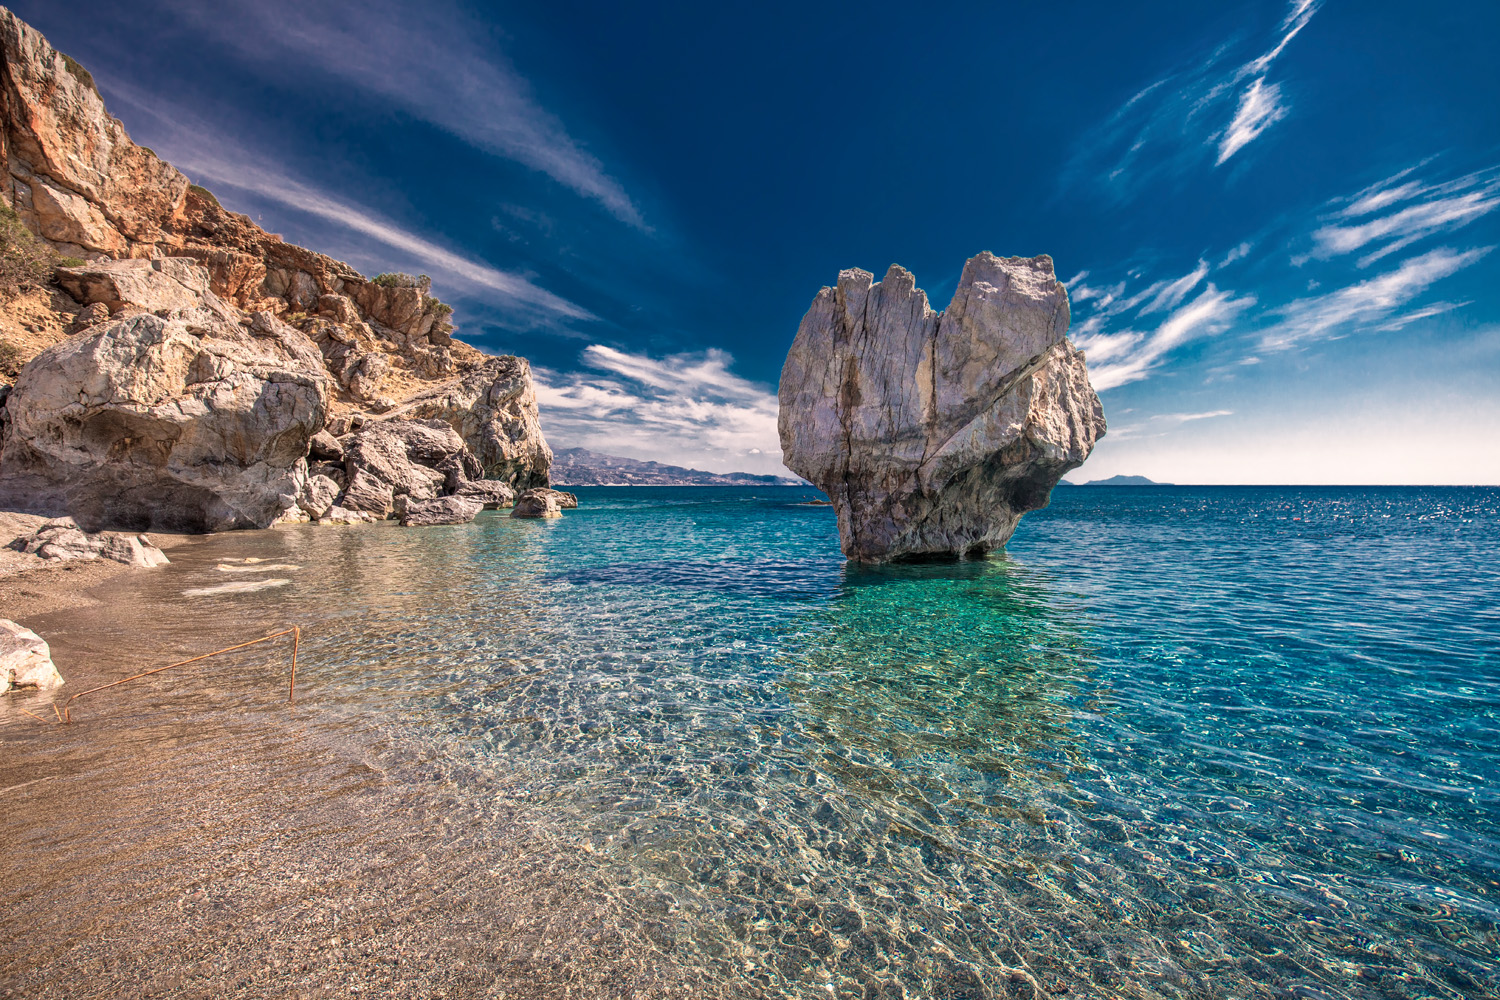 tourism in crete greece